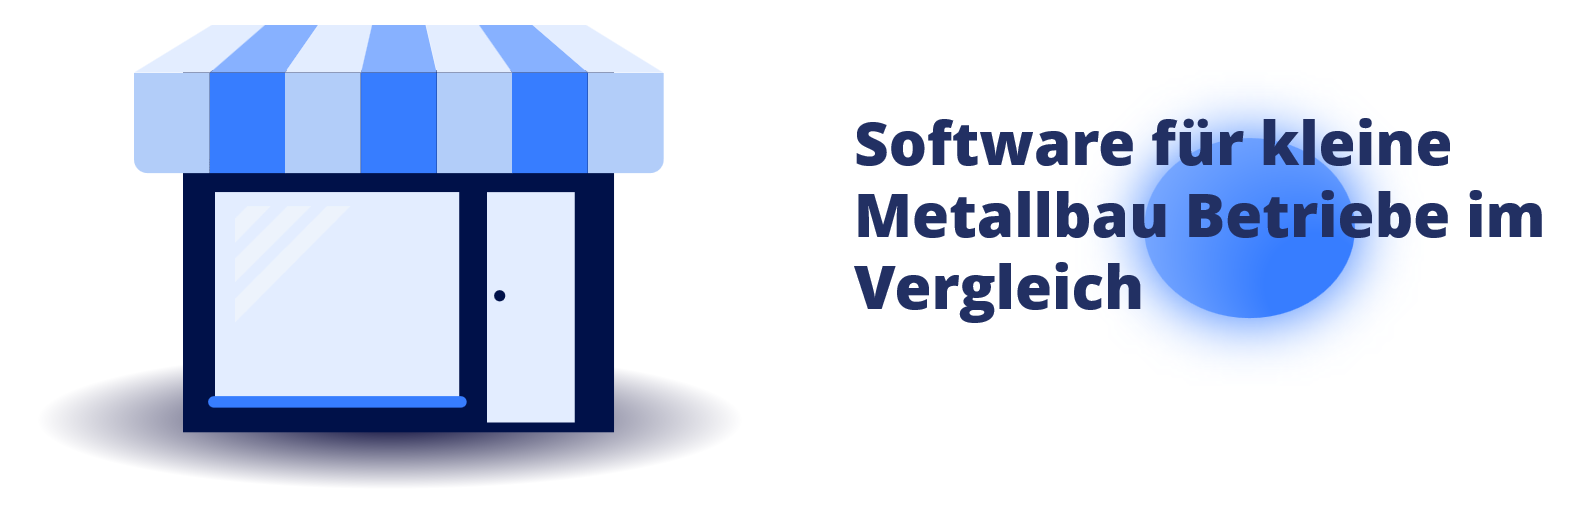 Metallbau Software für kleine Betriebe - Beitragsbild